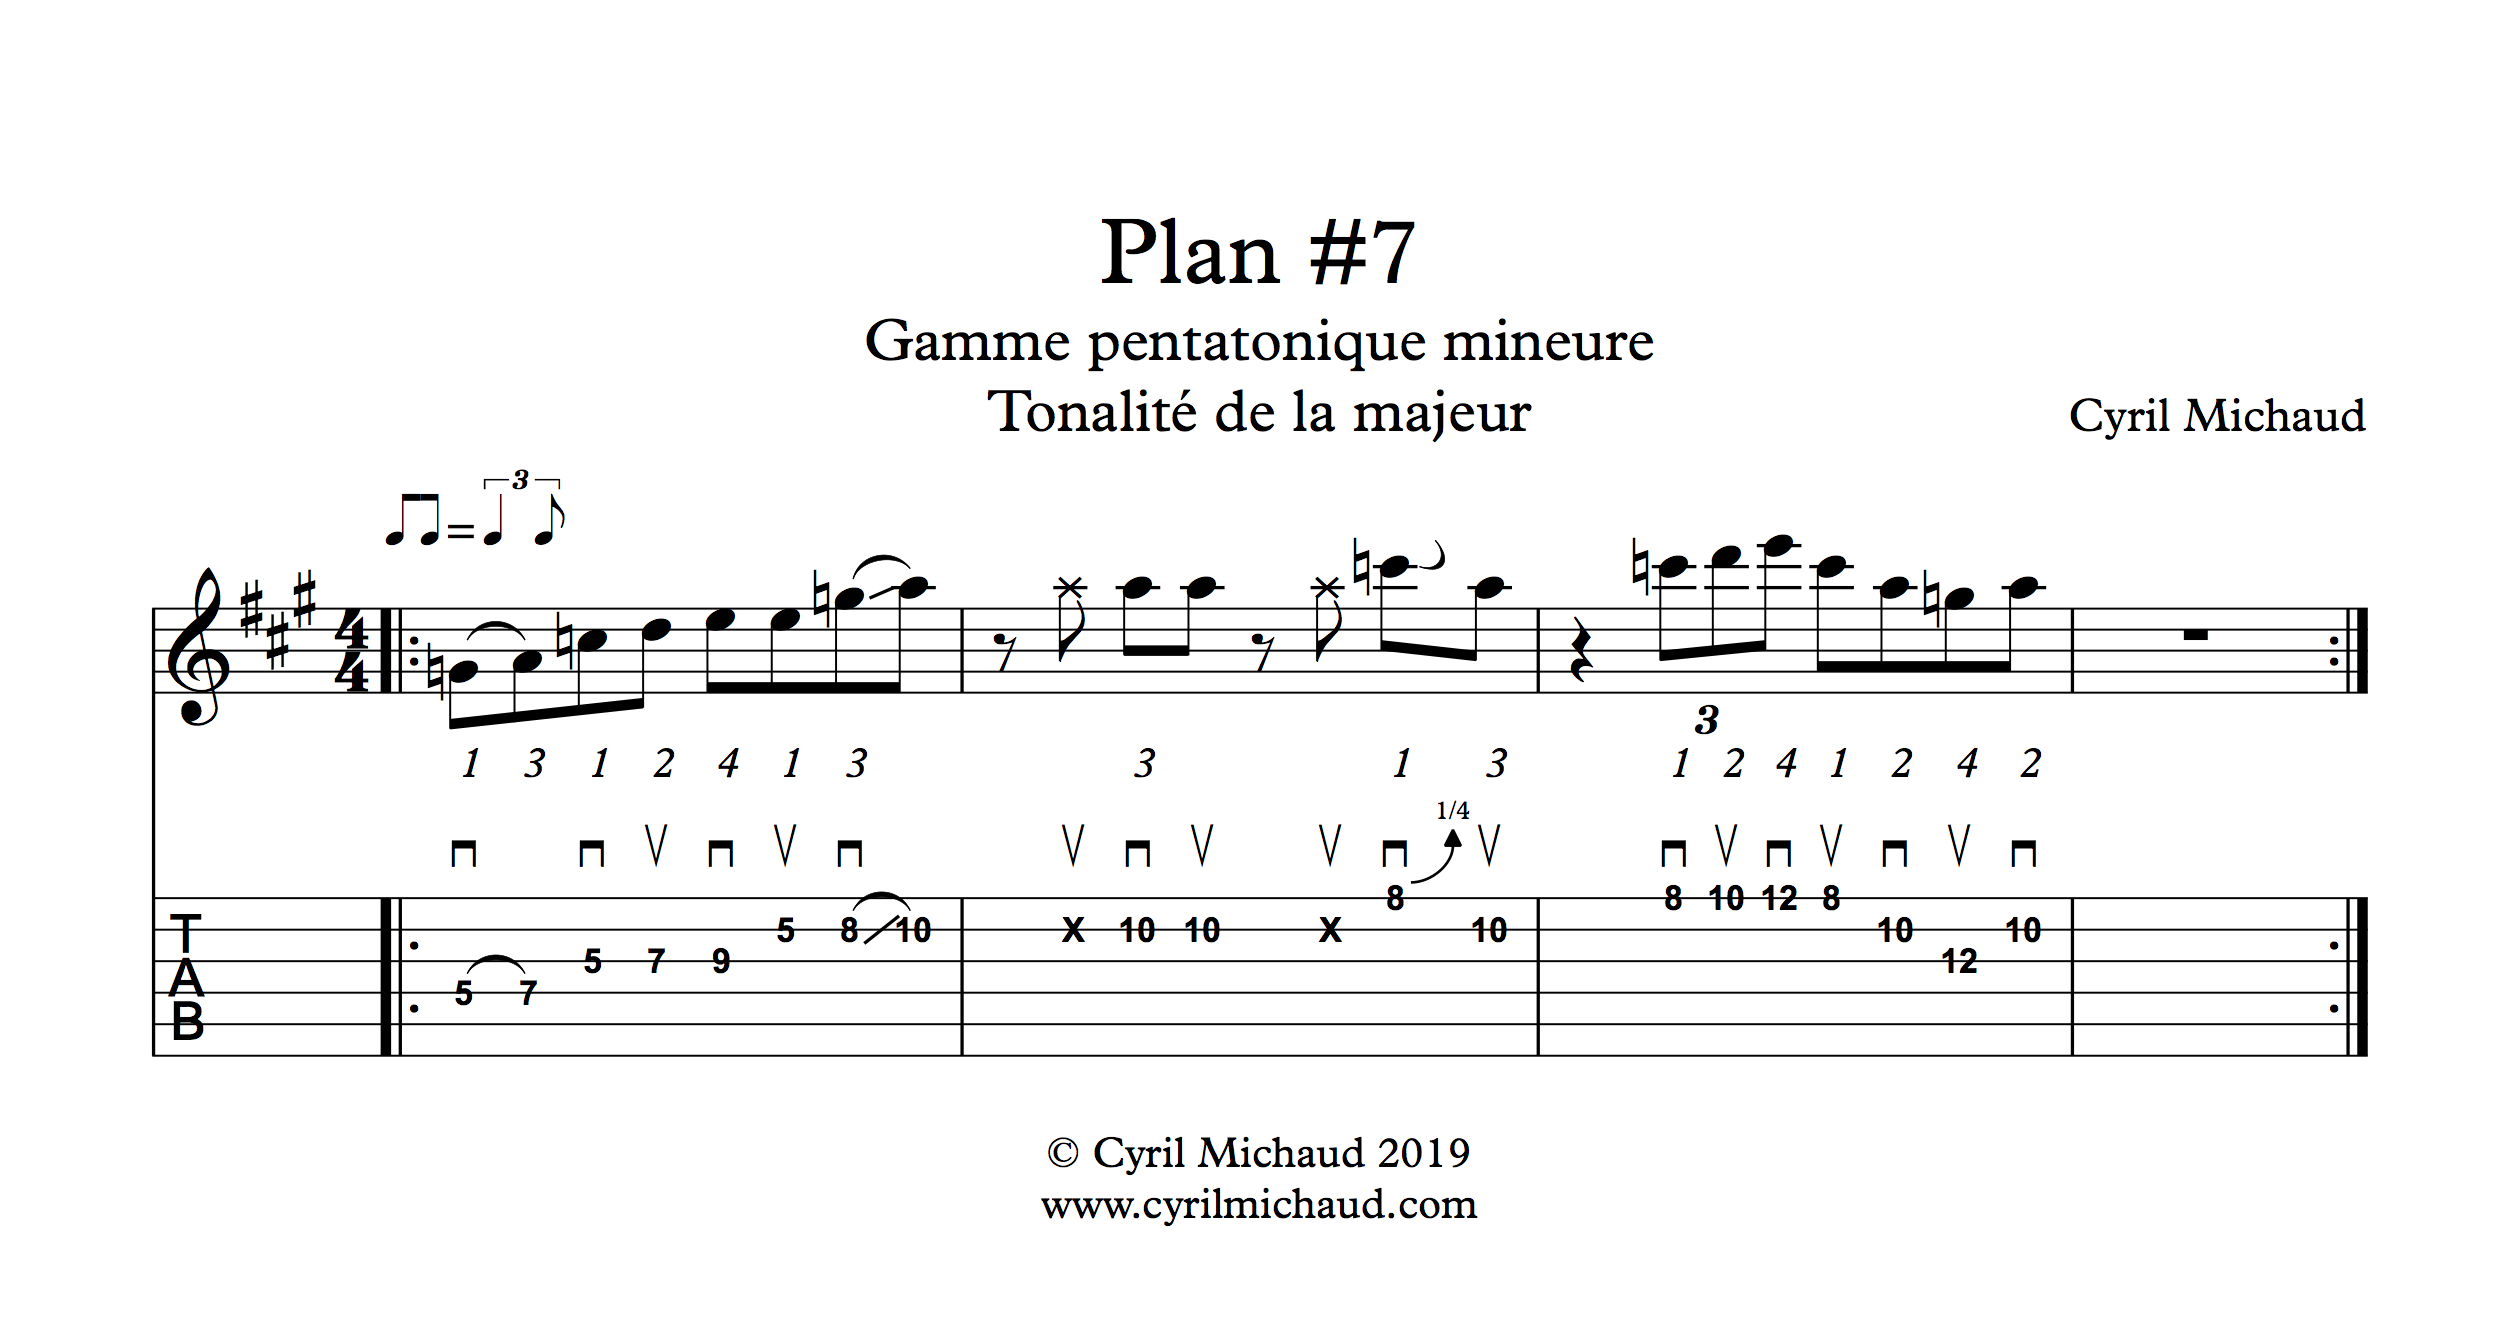 Plan blues sur la gamme pentatonique mineure (7)